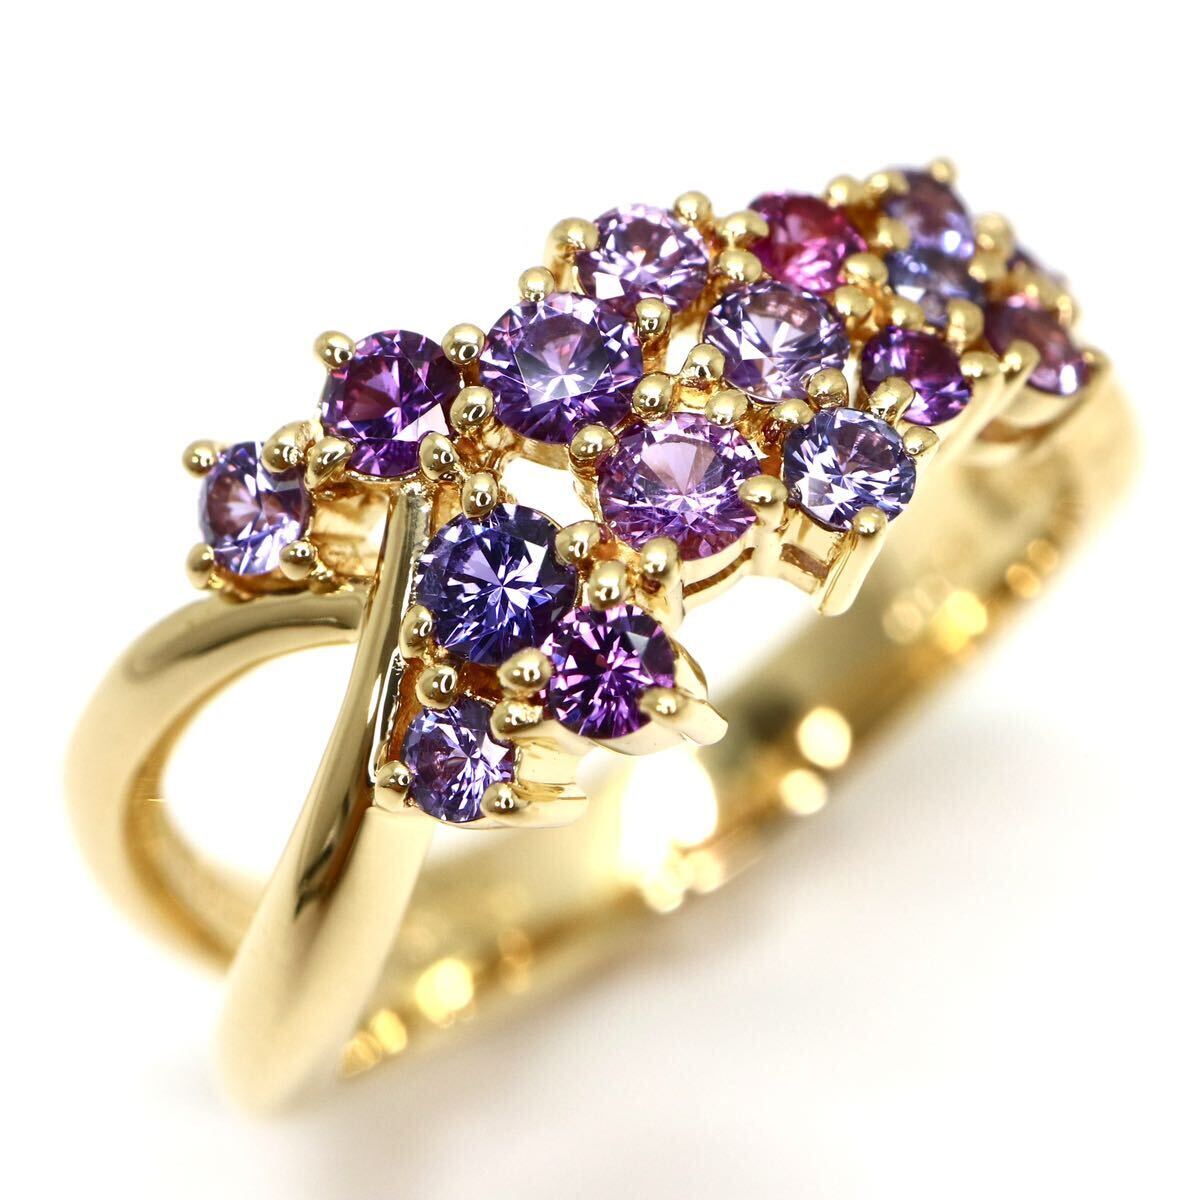 高品質!Ambrose(アンブローズ)保証書付き!◆K18 天然パープルサファイアリング◆A 約5.1g 約11号 0.65ct purple sapphire ring指輪 EE0/EE0の画像1